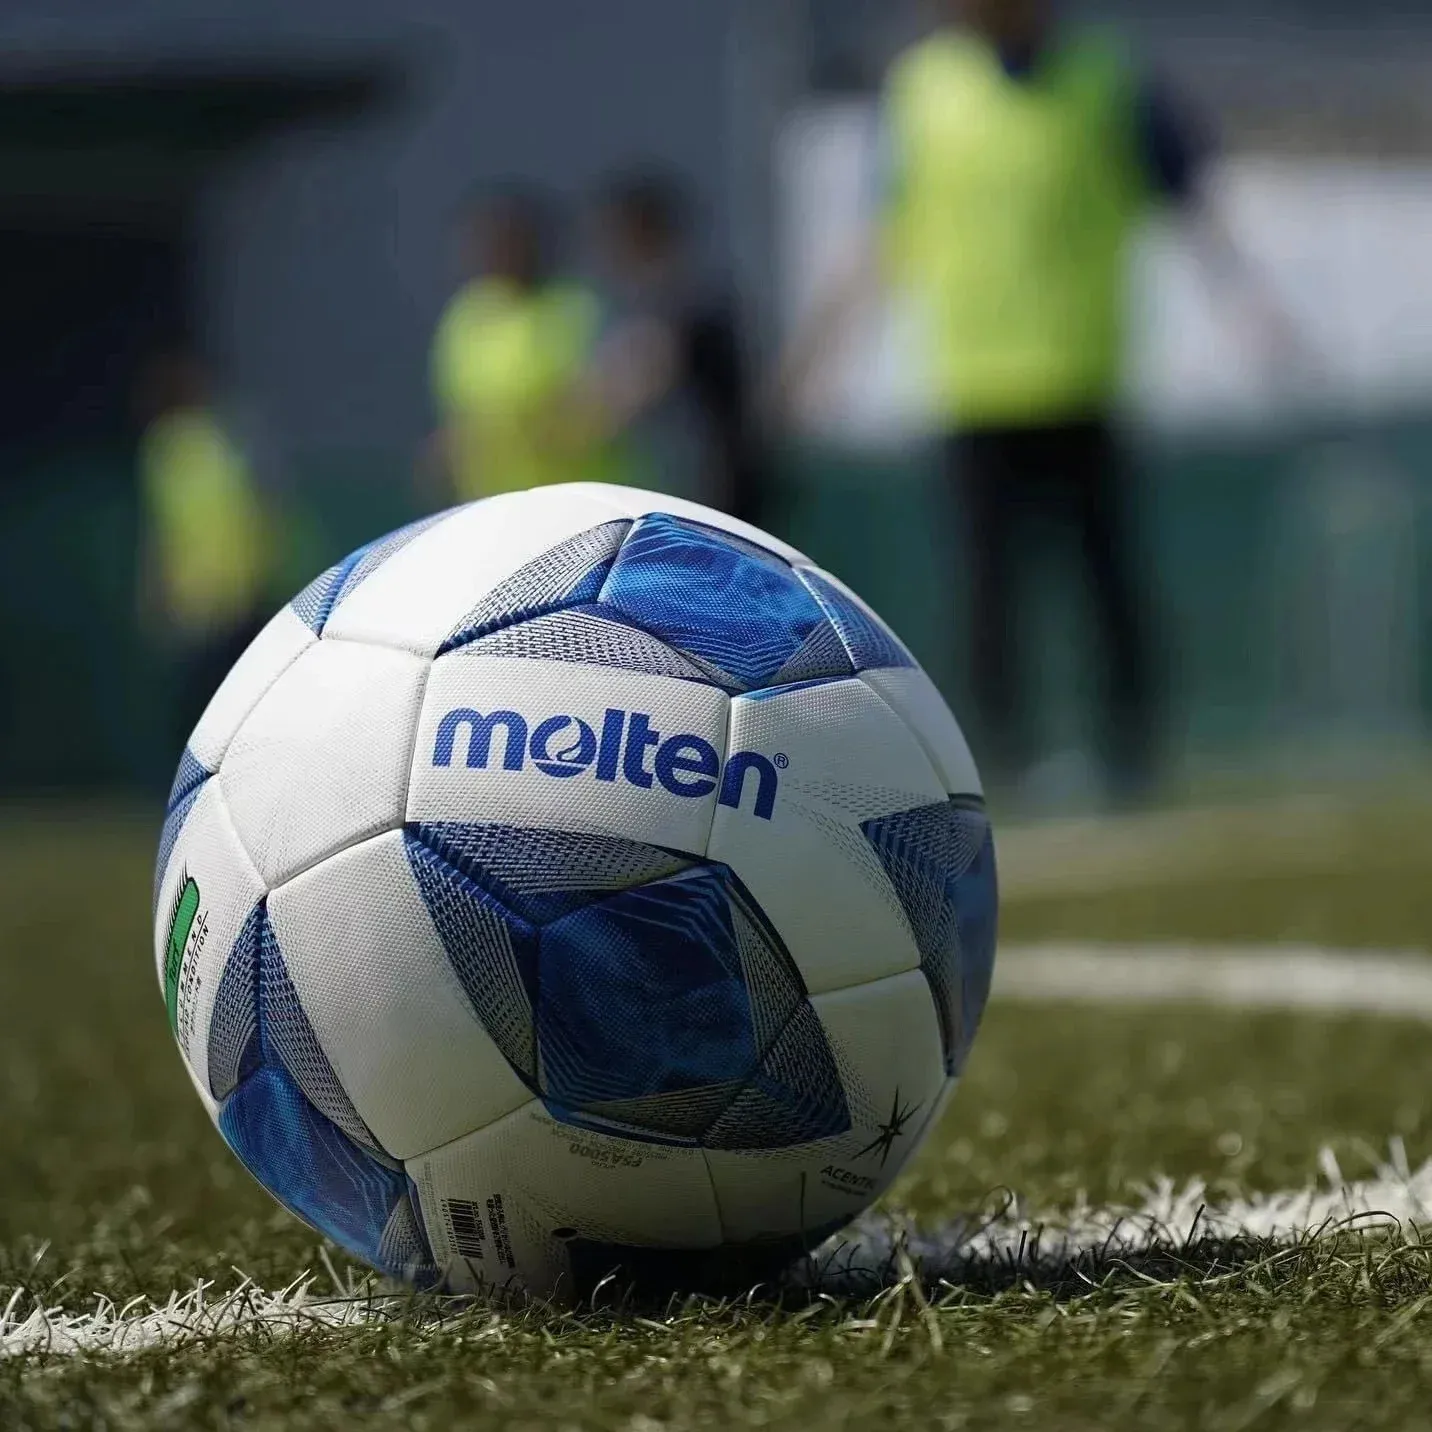 Ballons de football originaux fondus taille officielle 5 PVC cousu à la main balle résistante à l'usure en plein air herbe Football formation futbol 240130